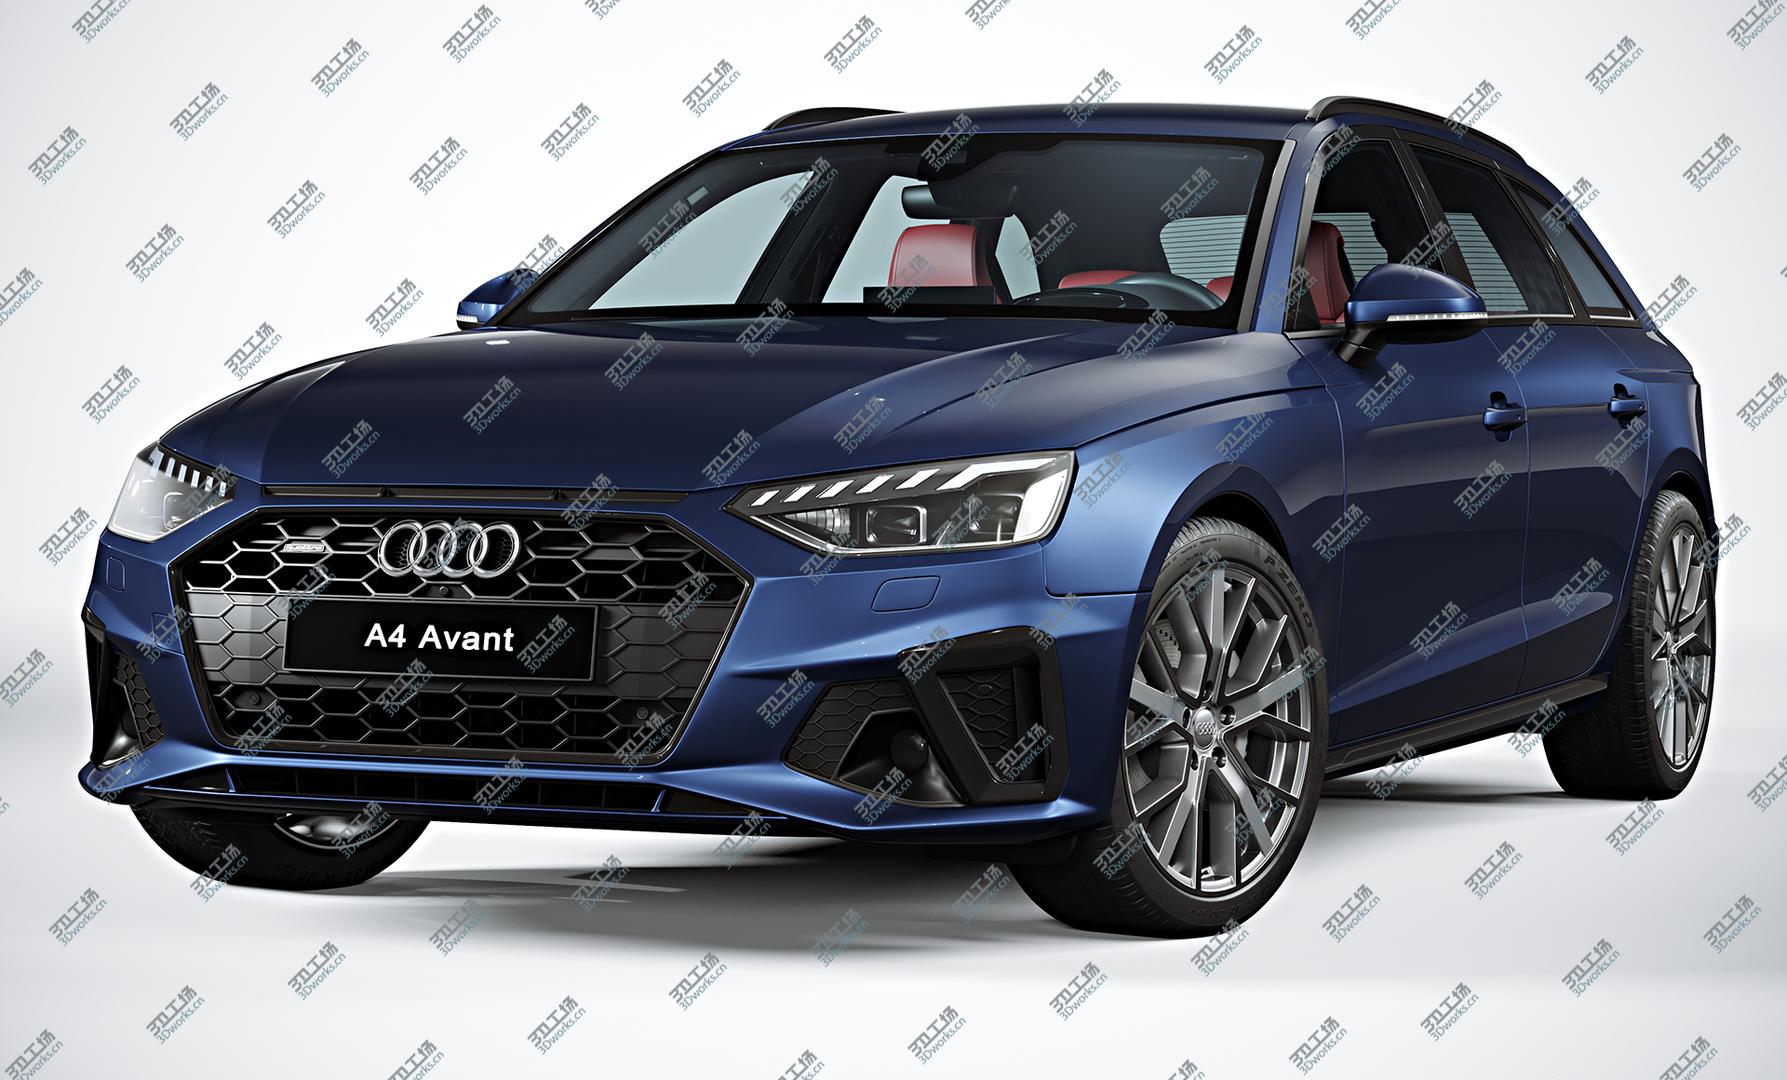 images/goods_img/202104021/3D 2020 Audi A4 Avant model/5.jpg